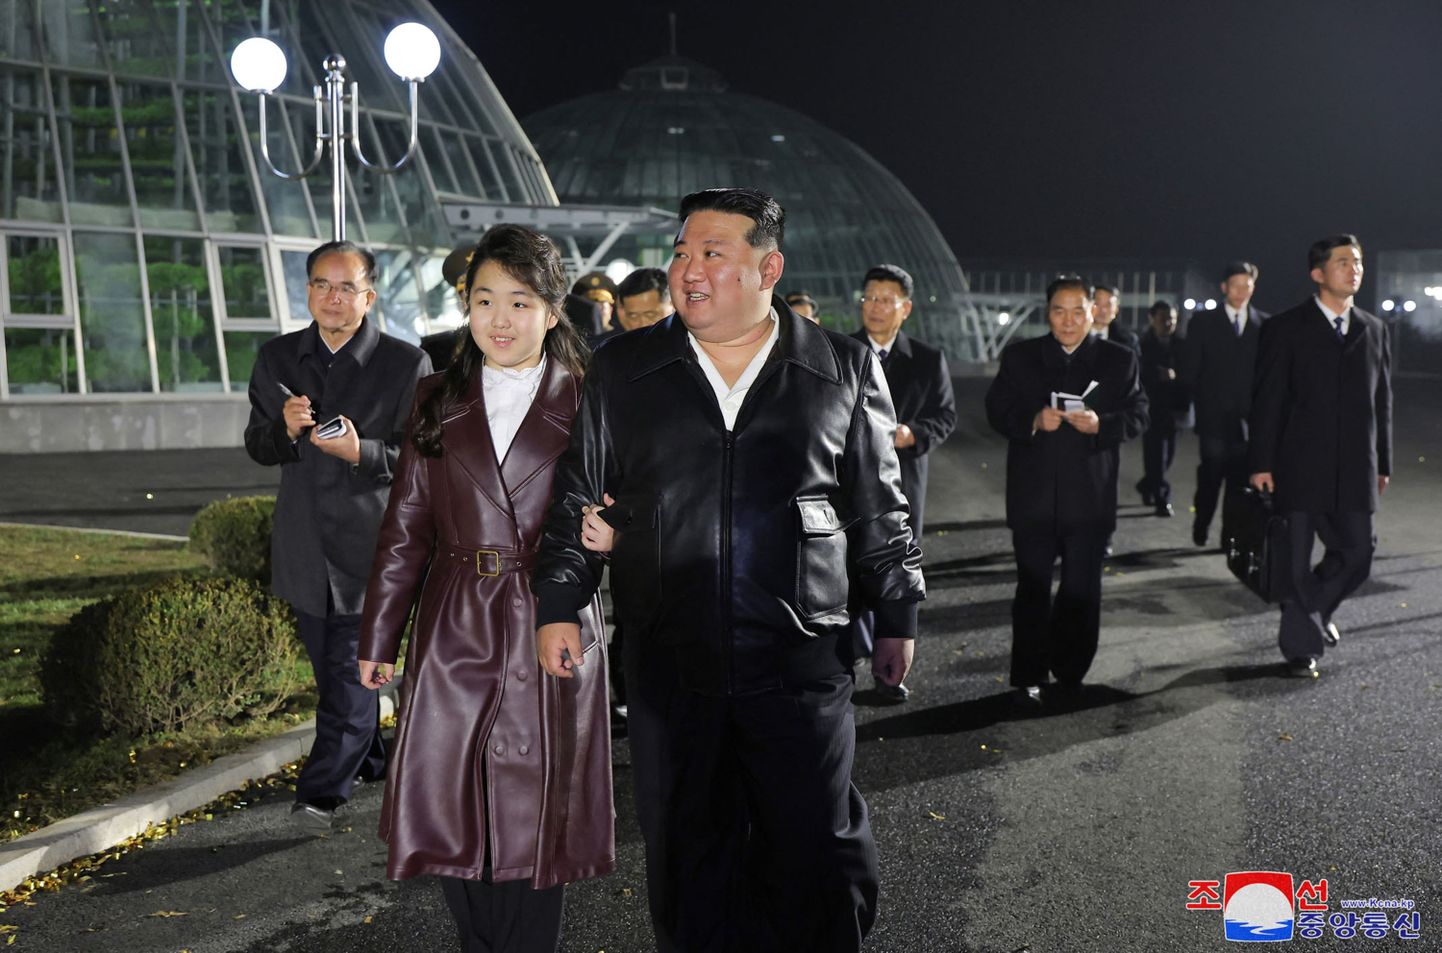 Ziemeļkorejas līderis Kims Čenuns ar meitu.